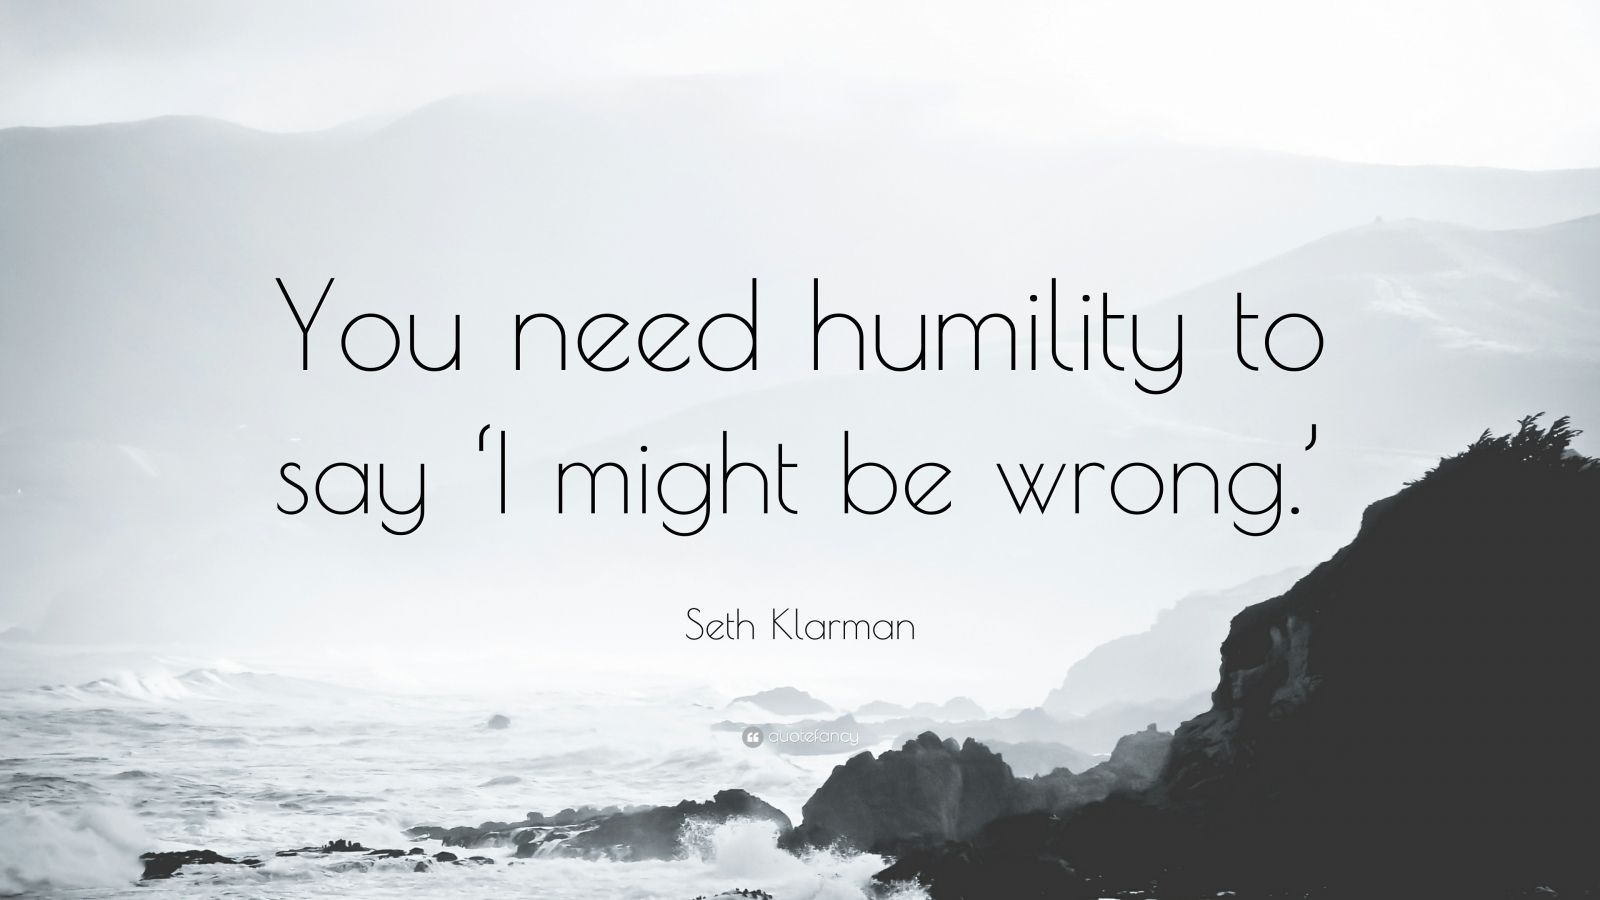 Seth Klarman Quote: “You need humility to say ‘I might be wrong.’”